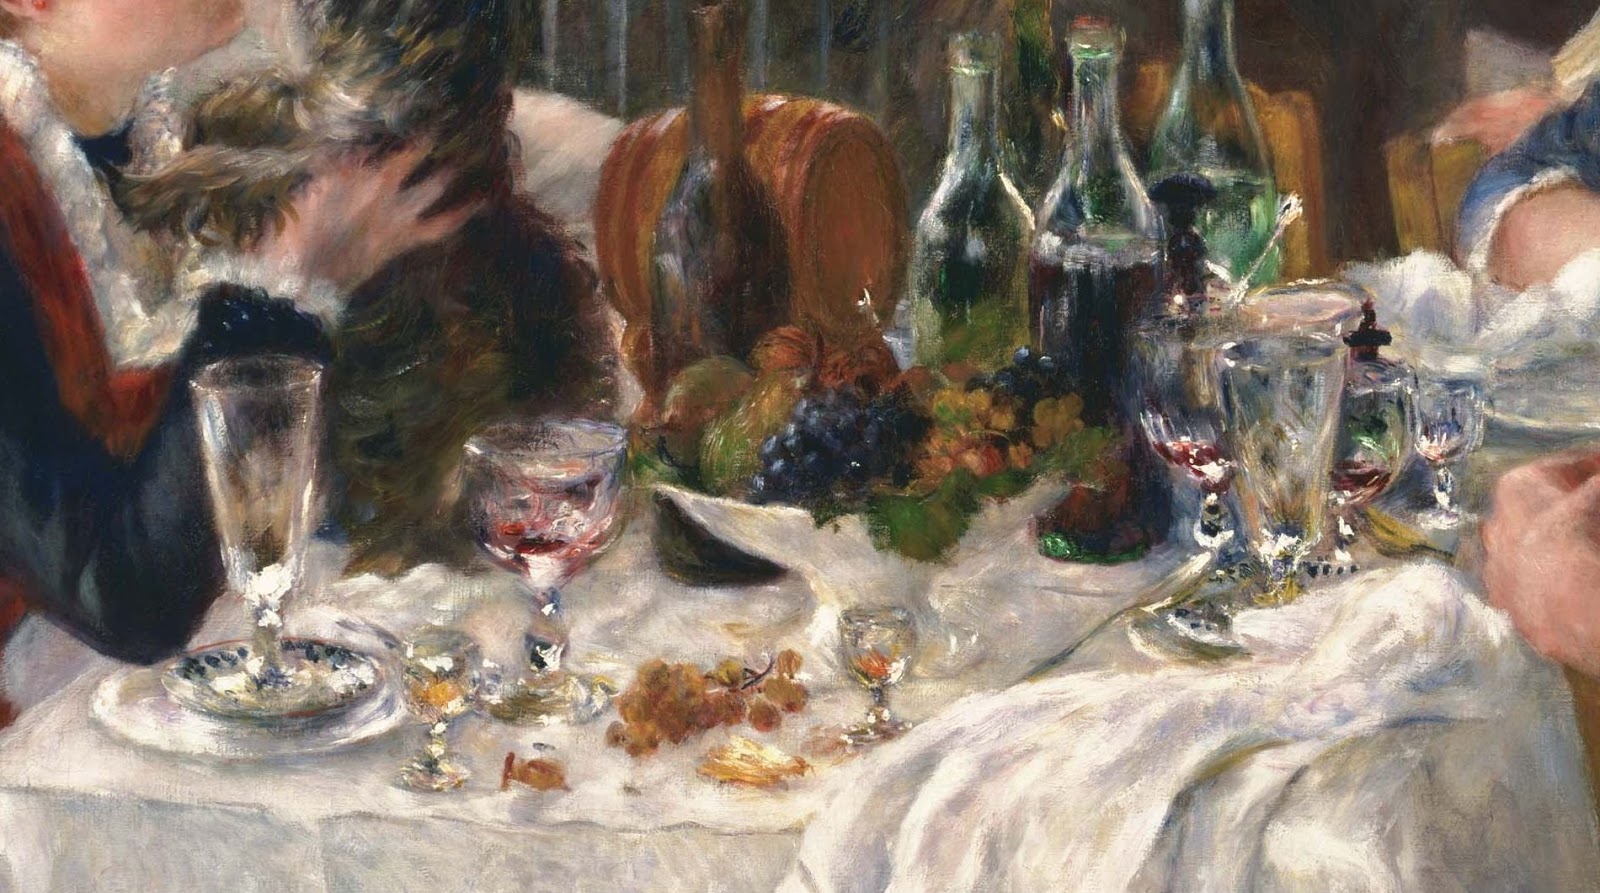 Pierre+Auguste+Renoir-1841-1-19 (564).JPG